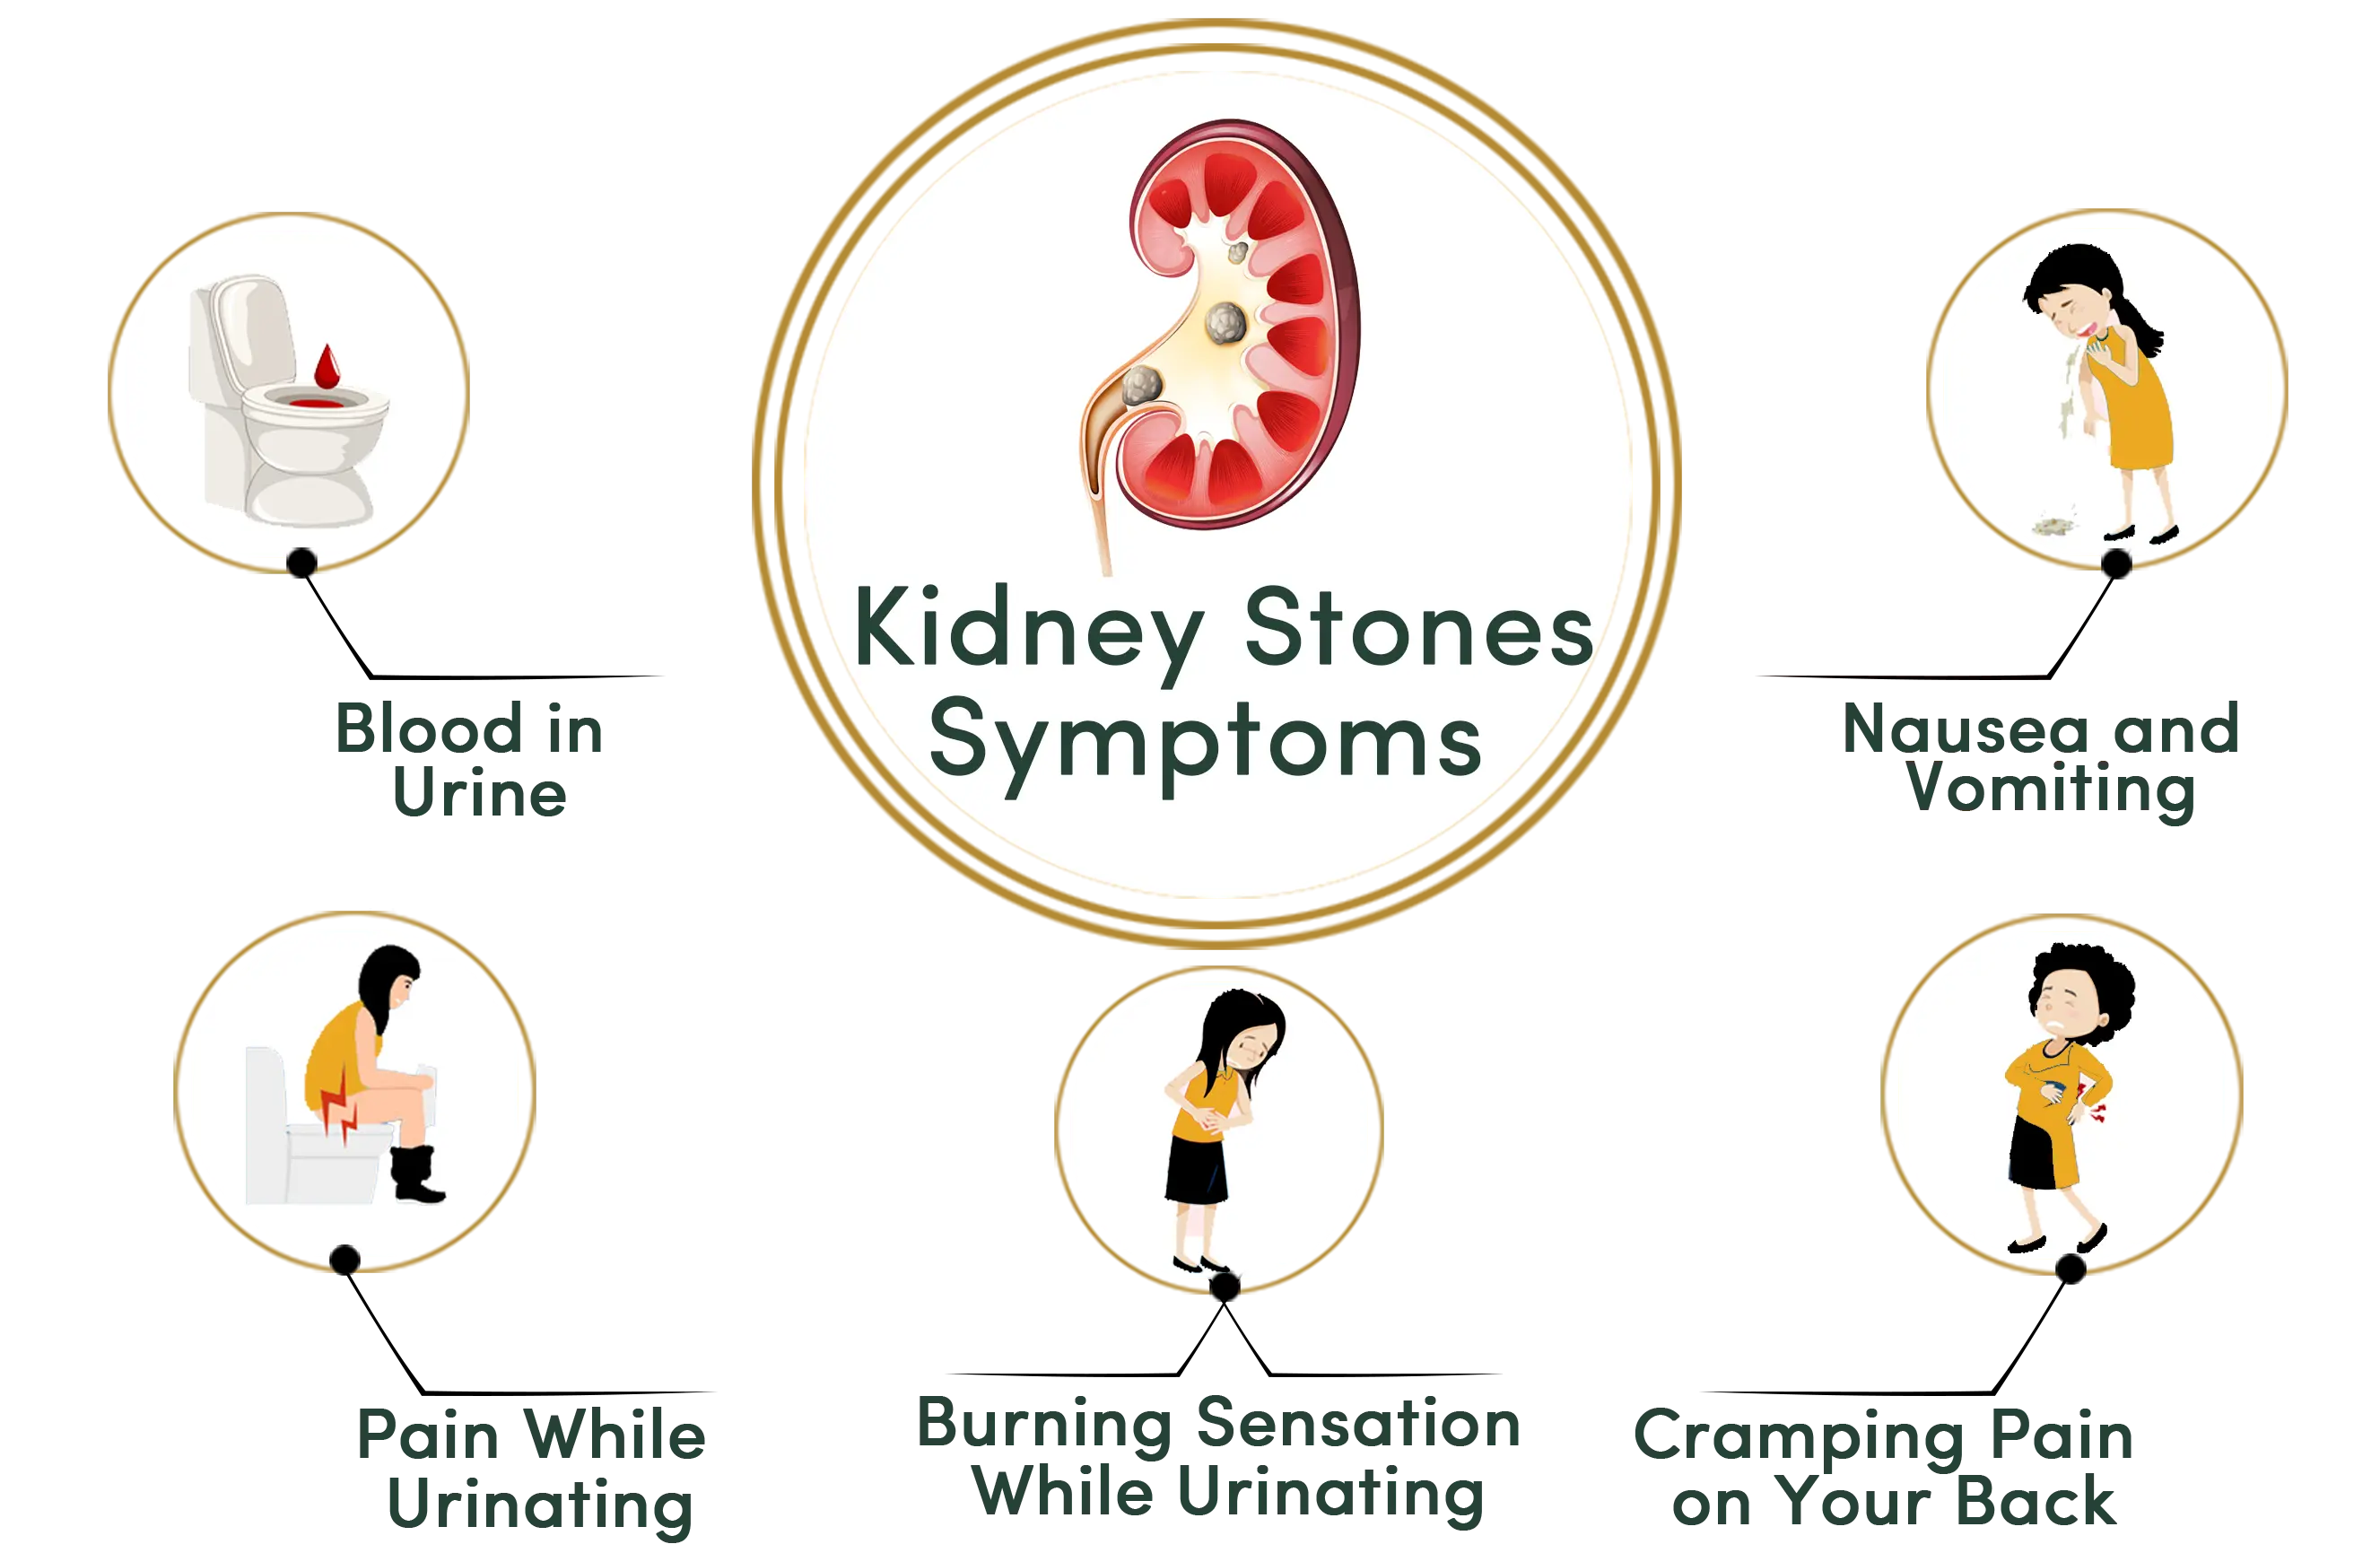 Kidney Stones symptoms